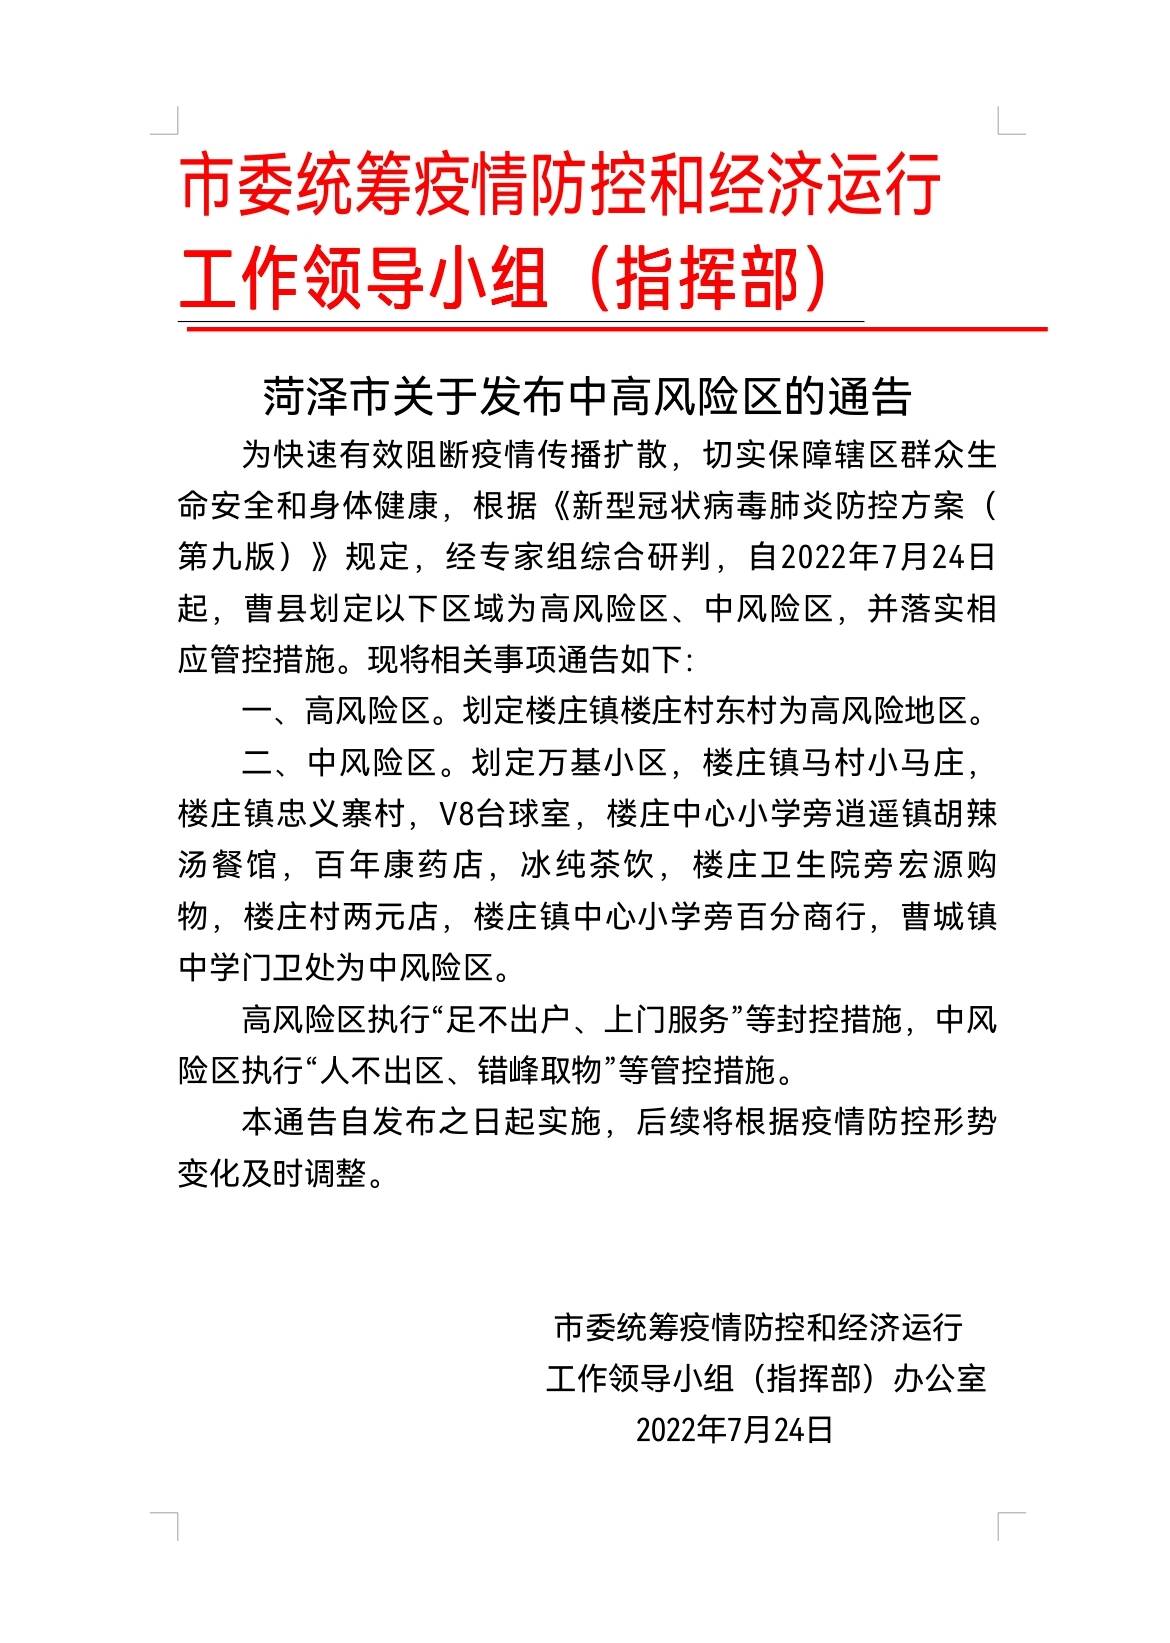 菏泽市发布曹县部分区域为中高风险区  并落实相应管控措施